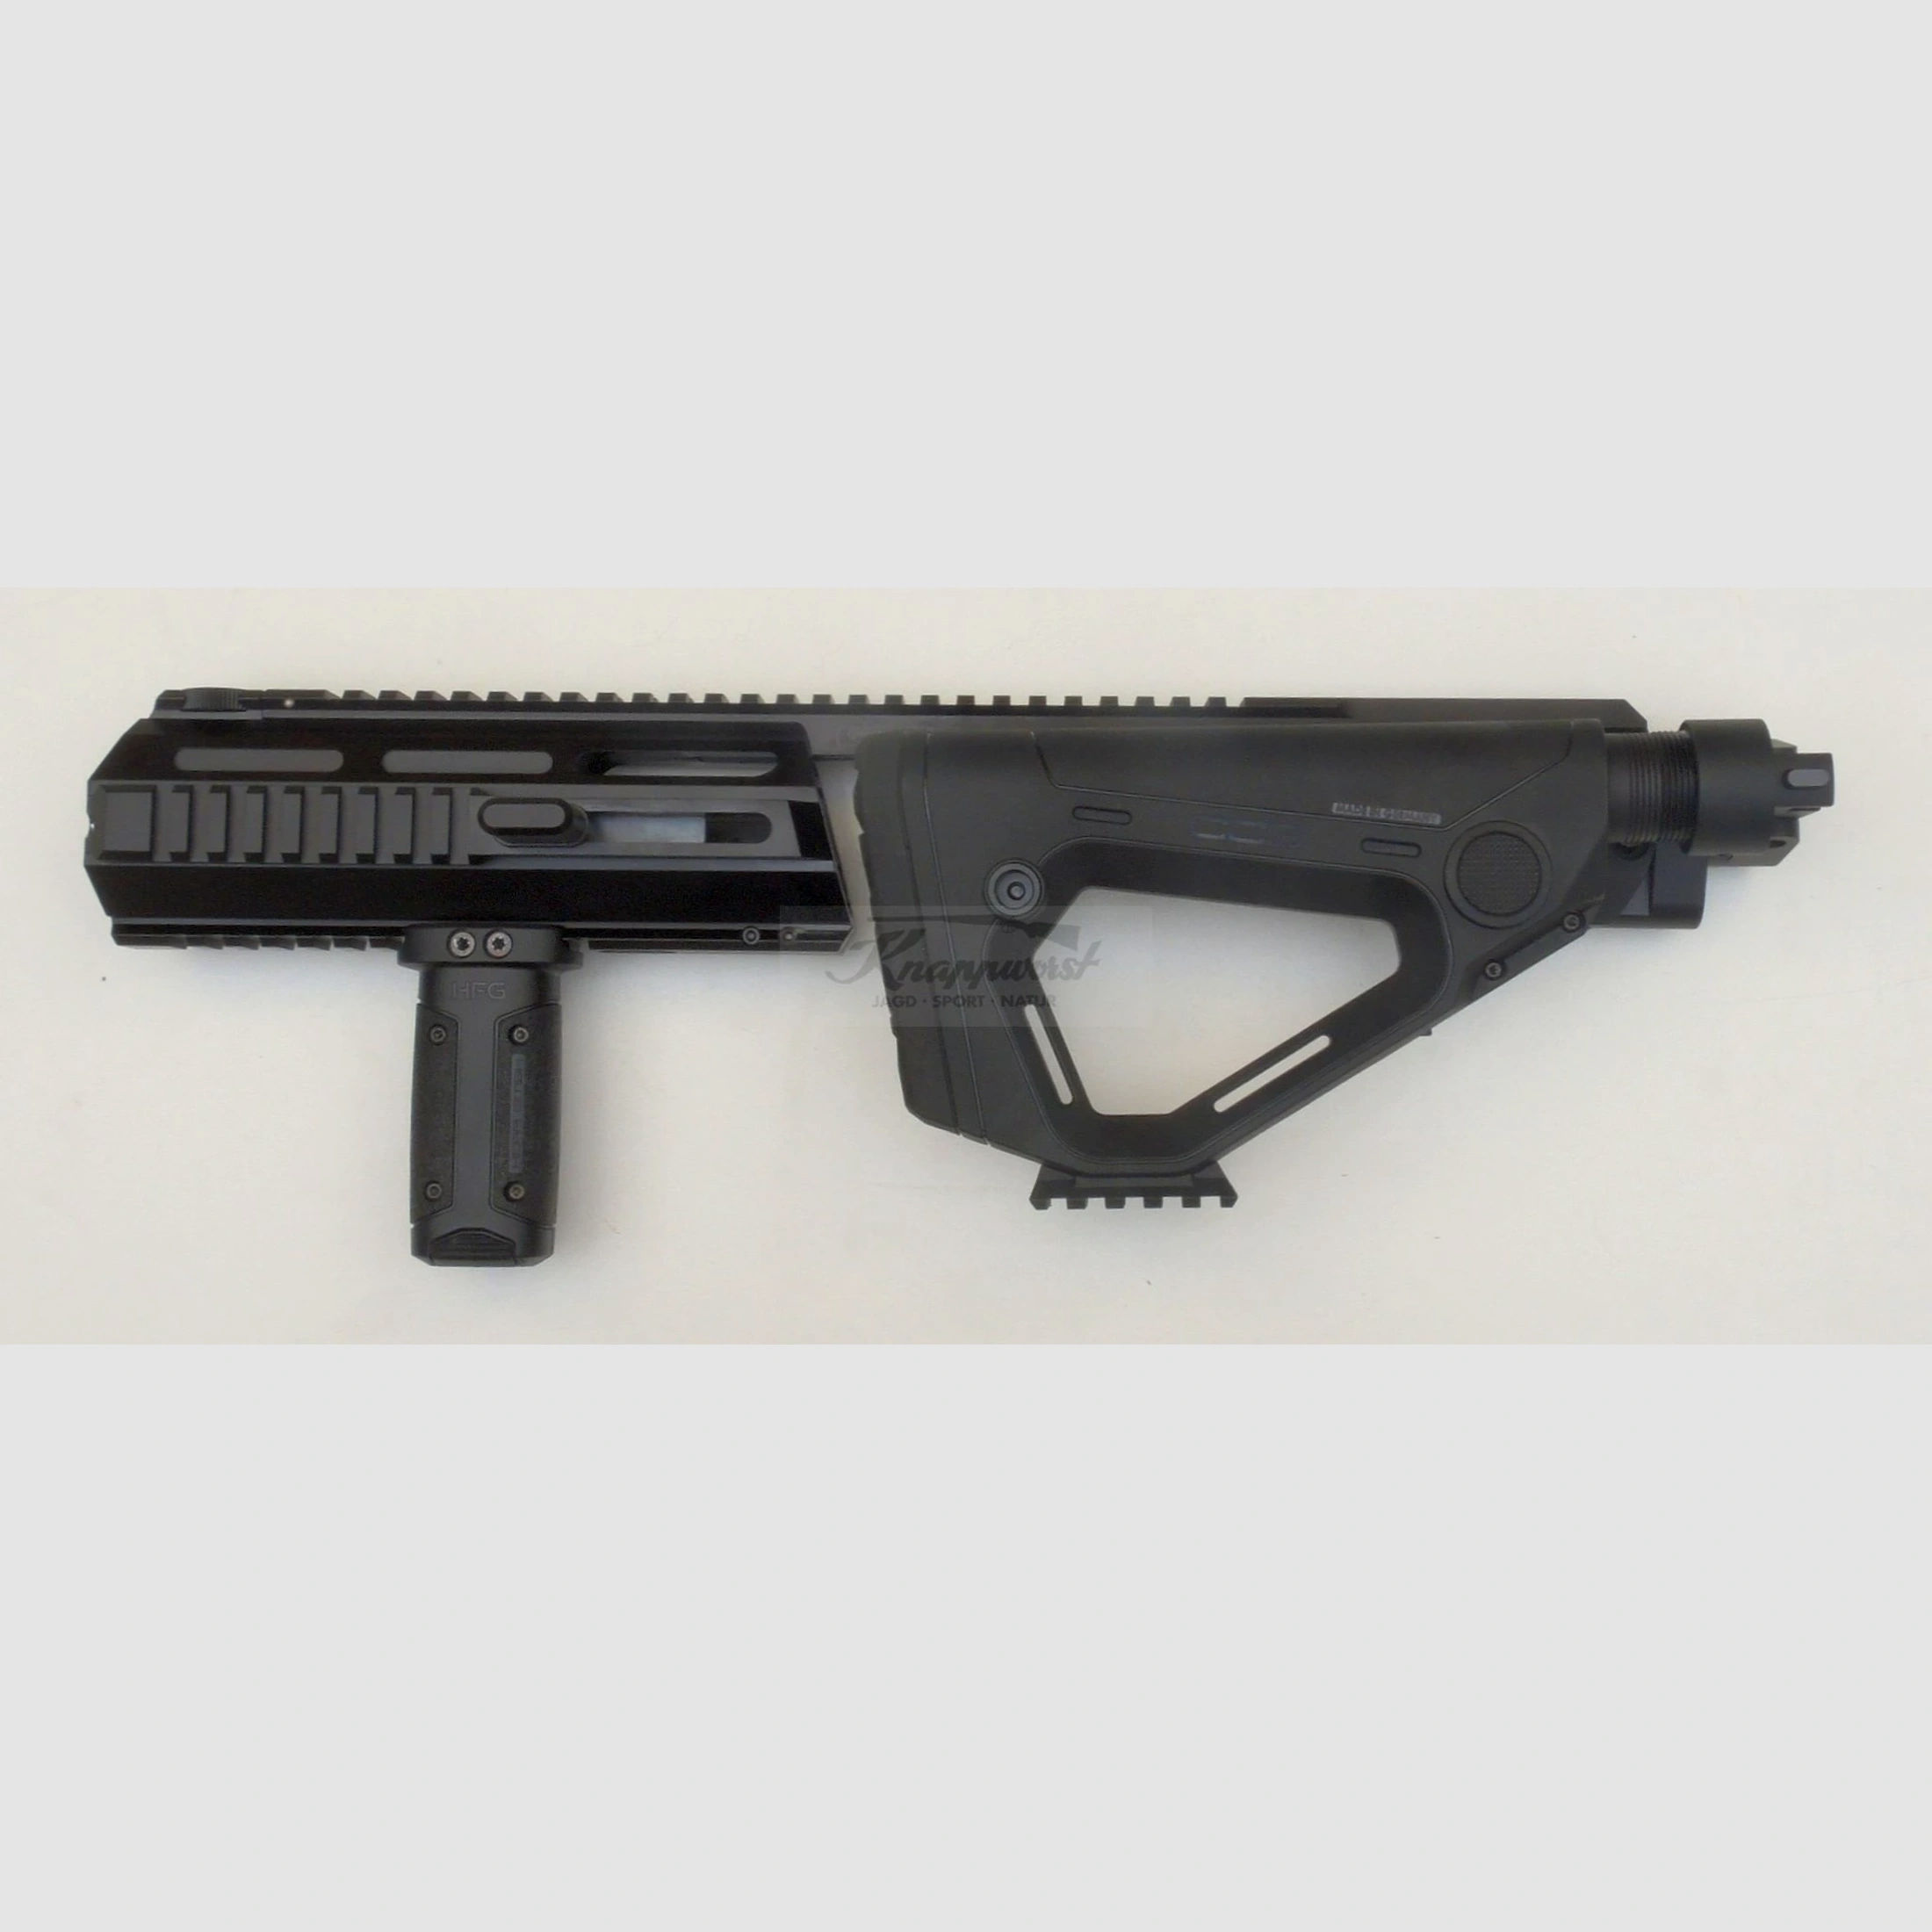 Triarii RTU BLK f. Glock 19/23 m. SFU - Vorführgerät